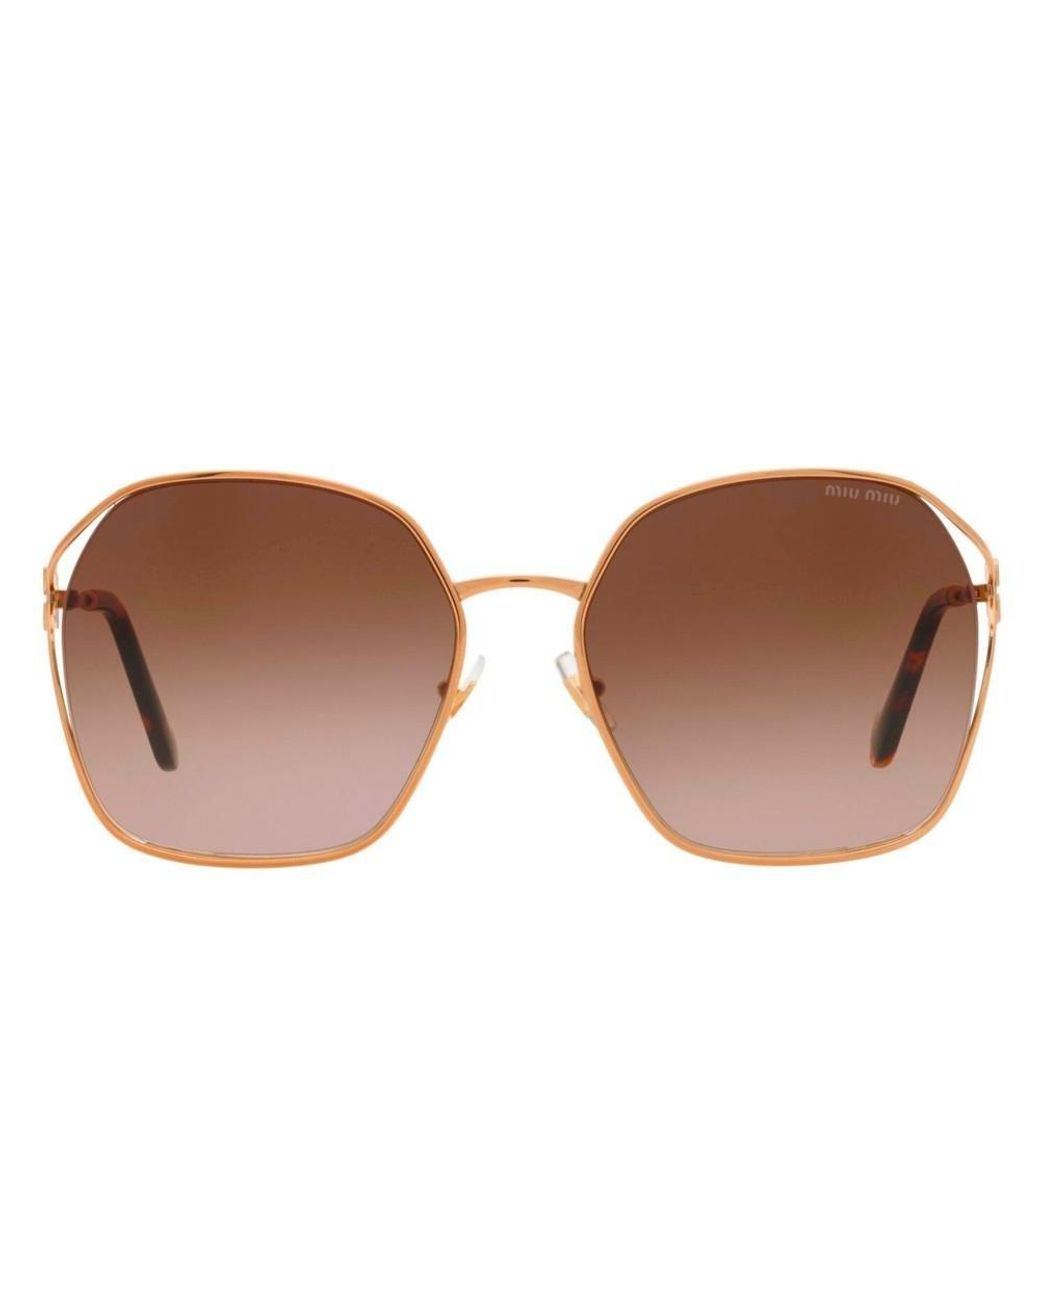 Miu Miu Square Frame Sunglasses in Black | Lyst UK